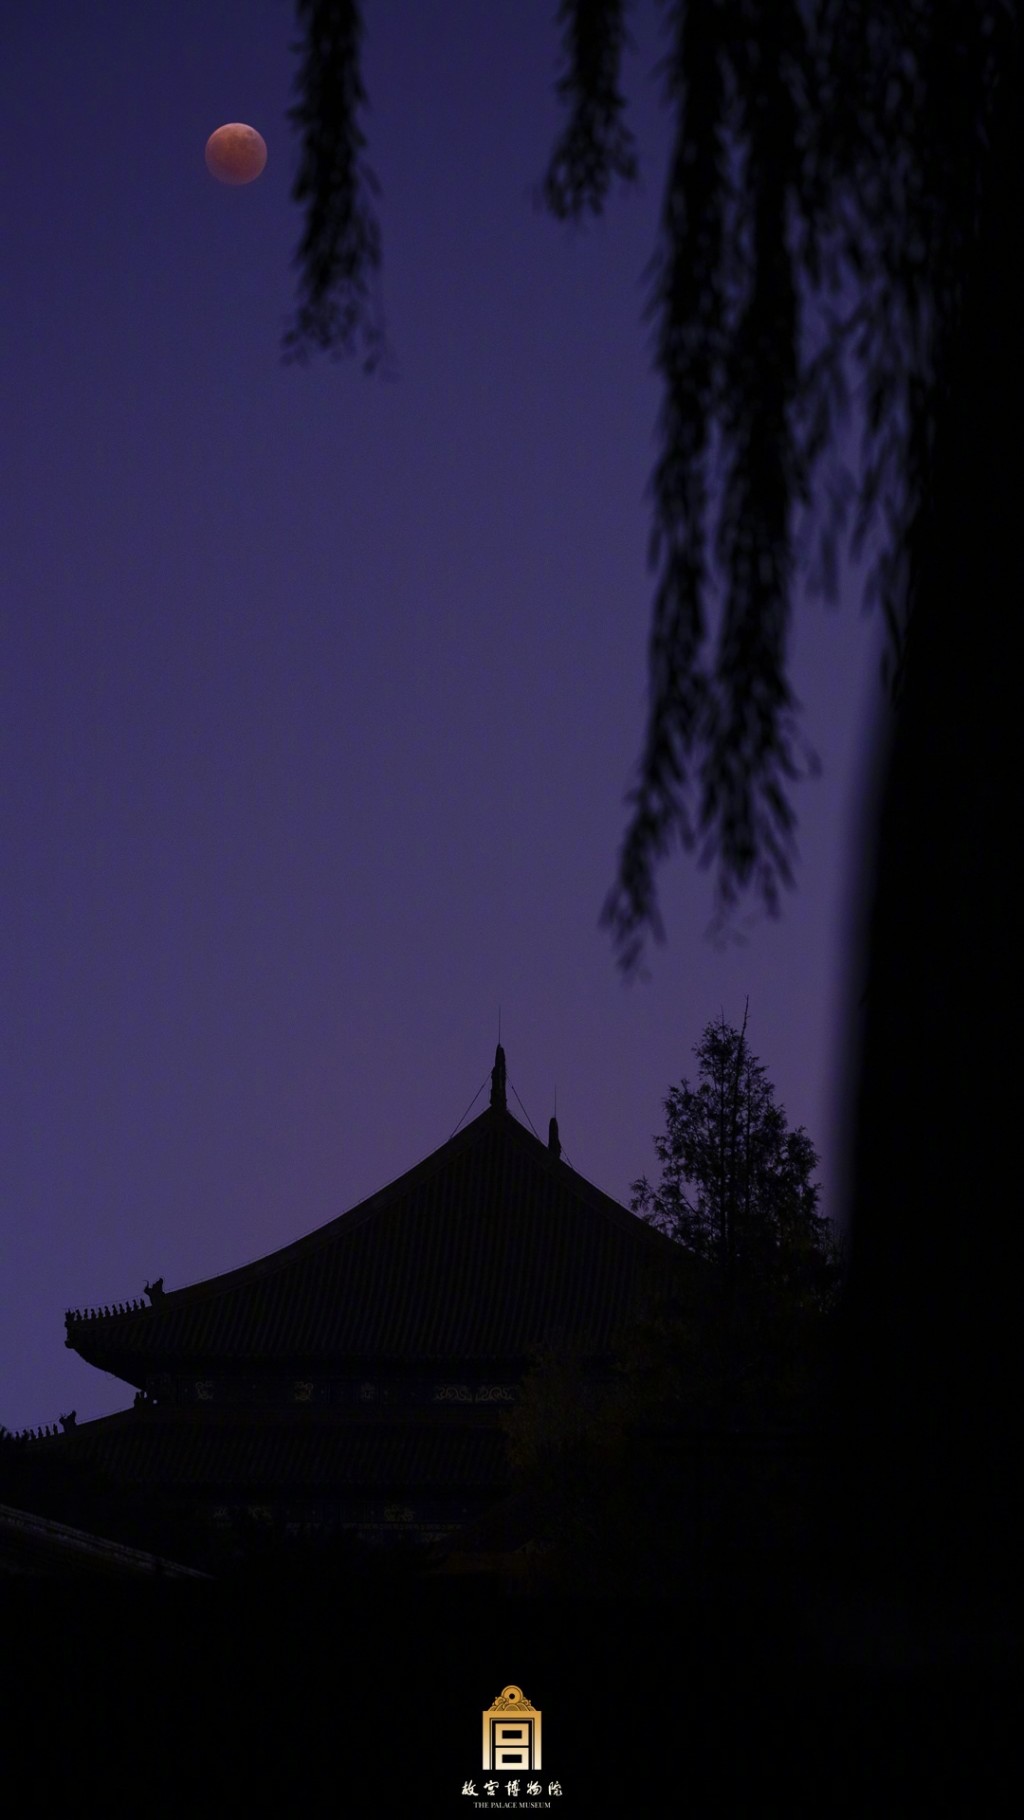 故宫博物馆里的月亮